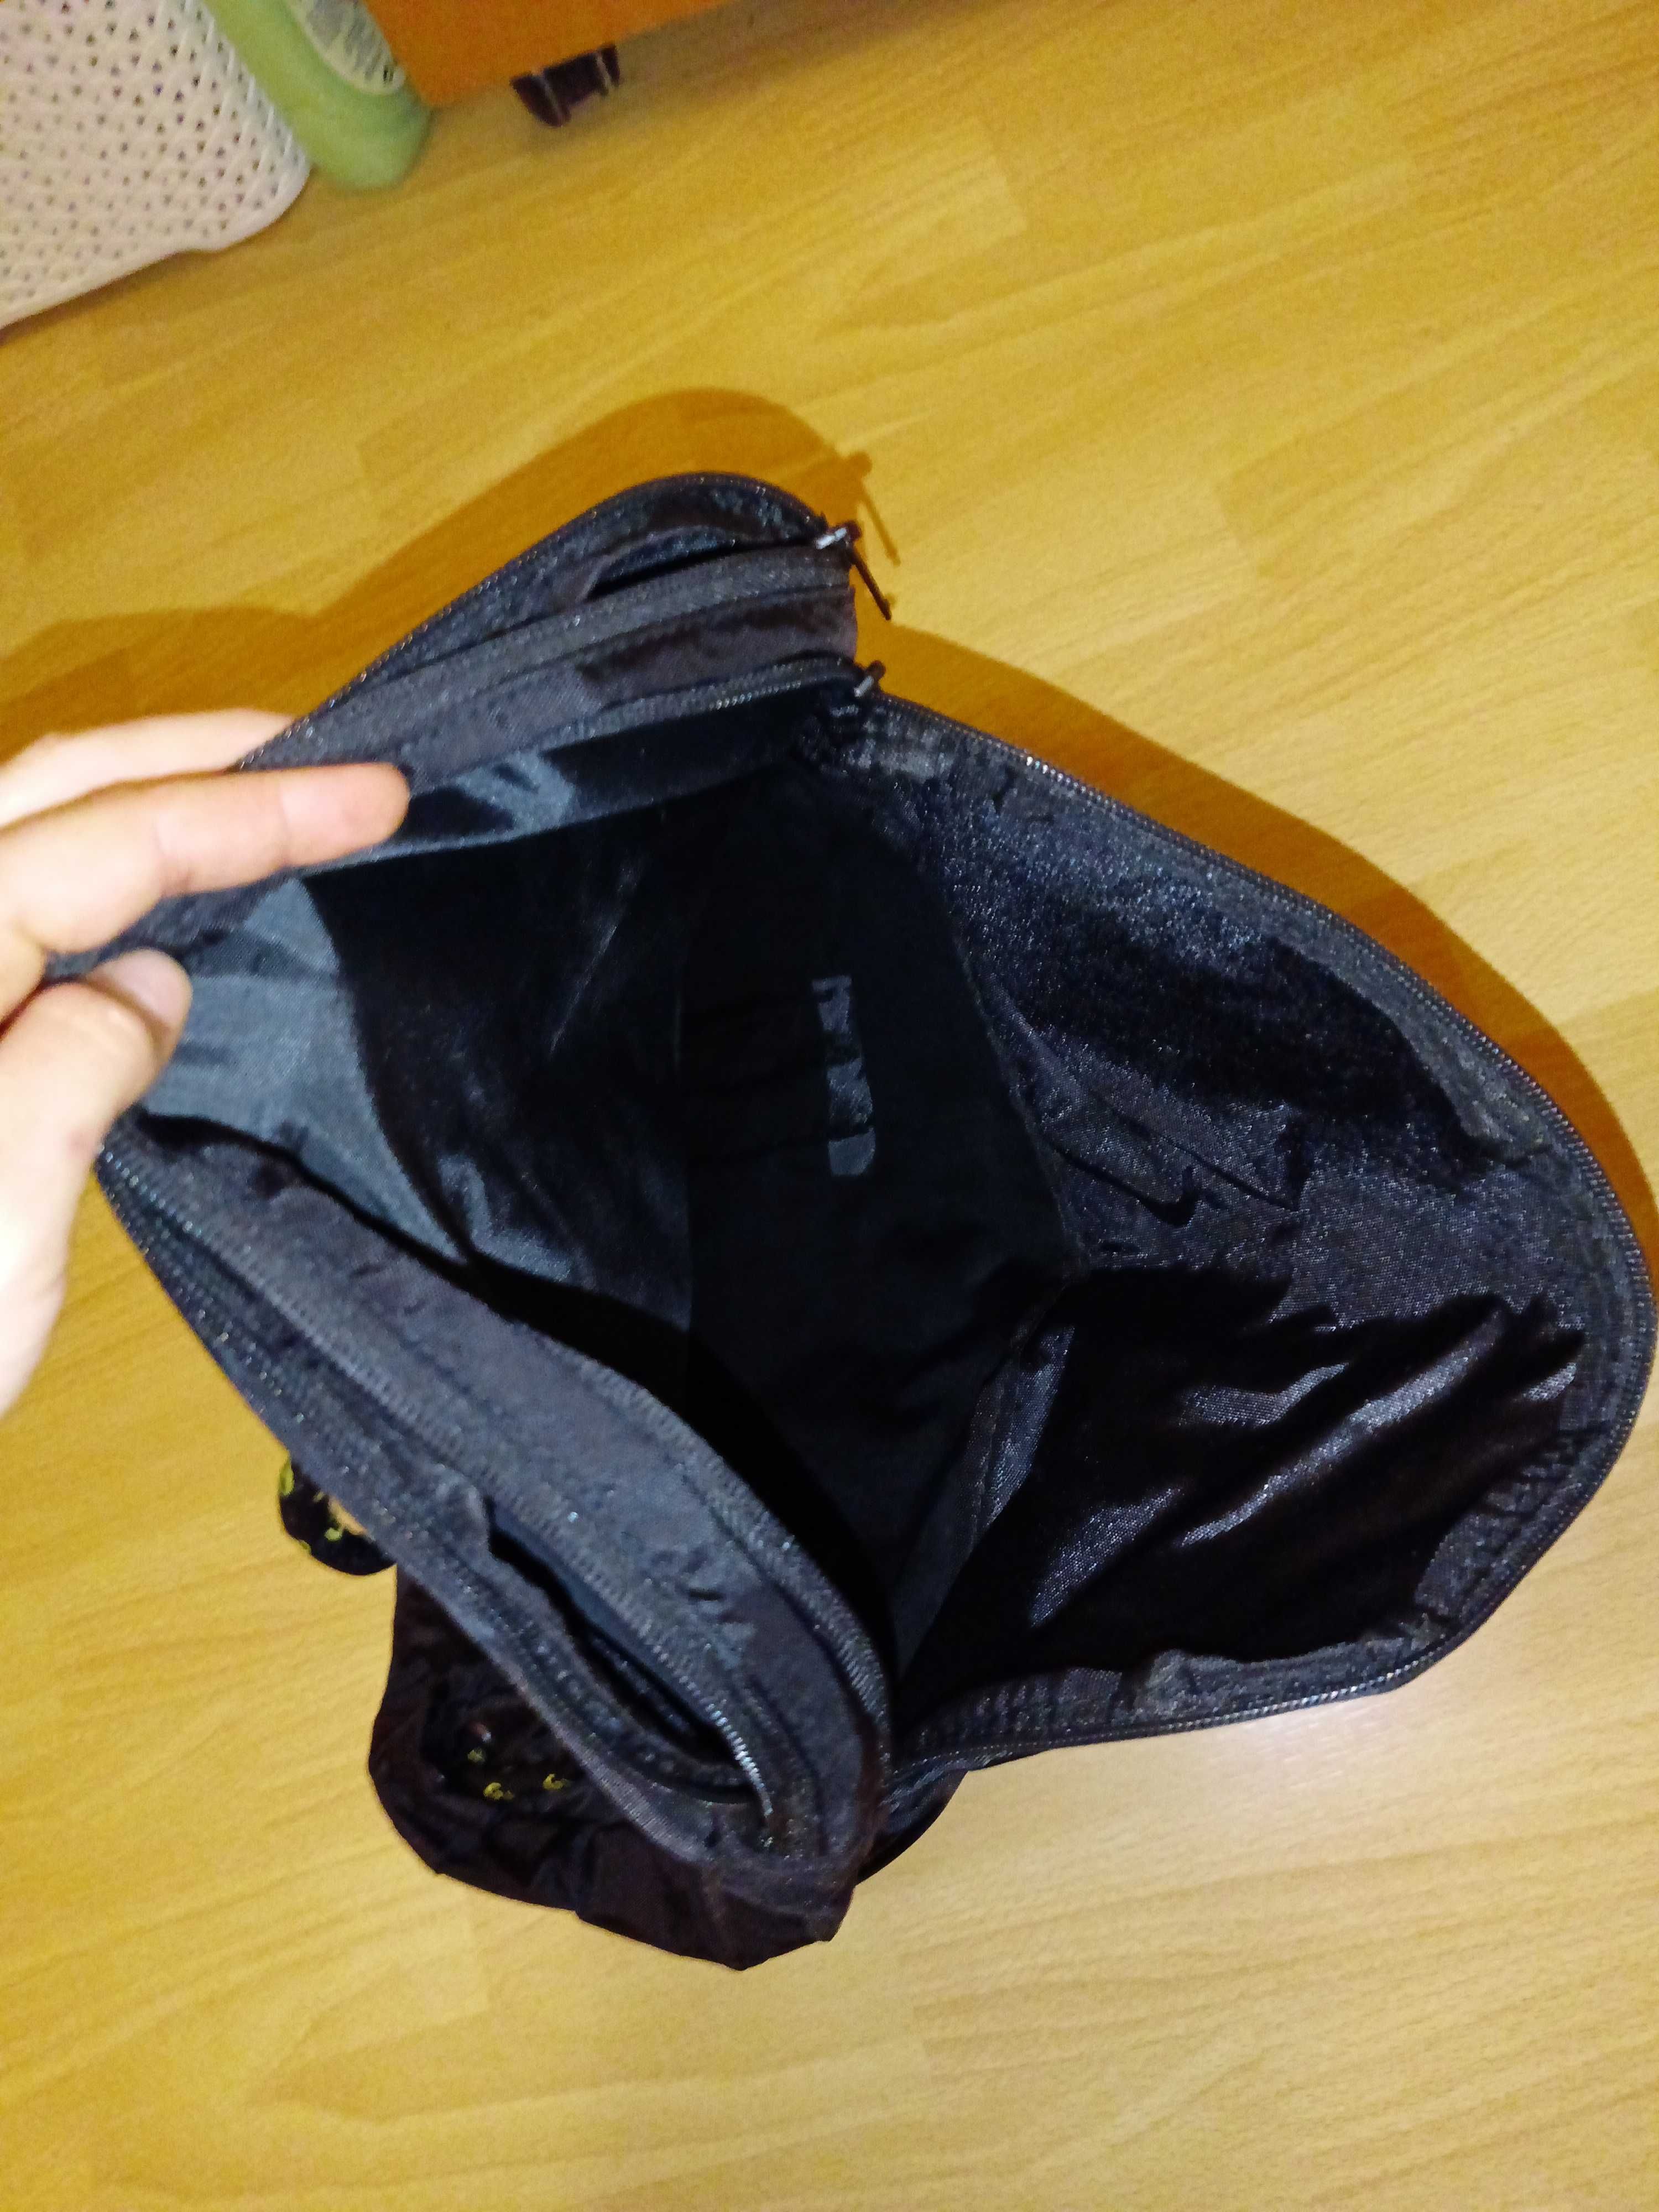 Czarny plecak na siłownię Gipara Calypso pojemny